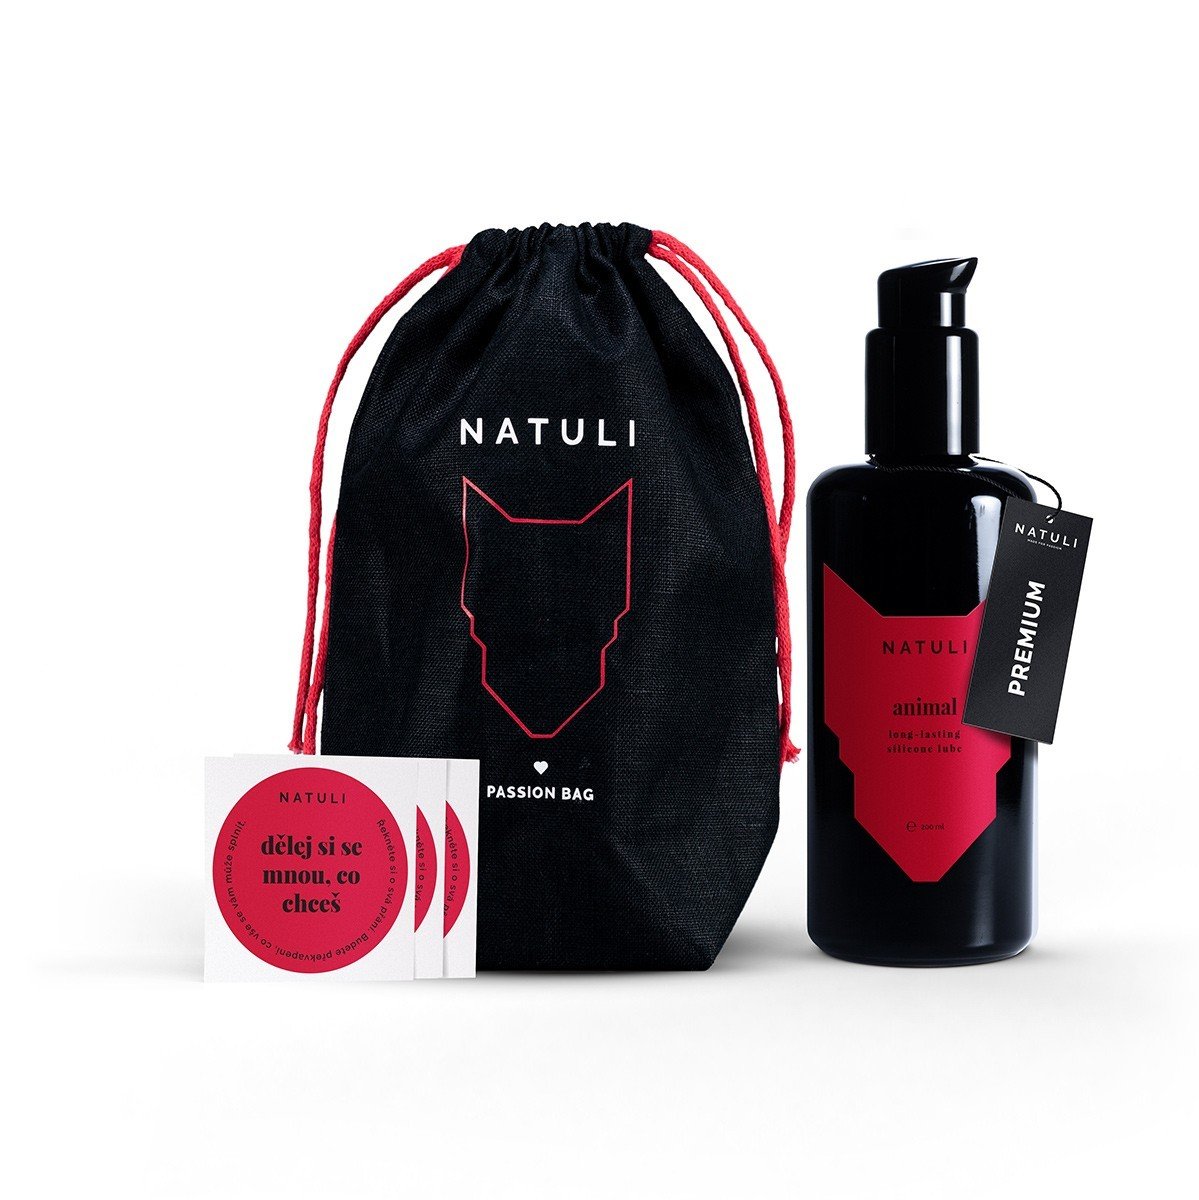 Natuli Premium Animal Gift 200 ml, lubrikant na silikónovej báze v darčekovom balení